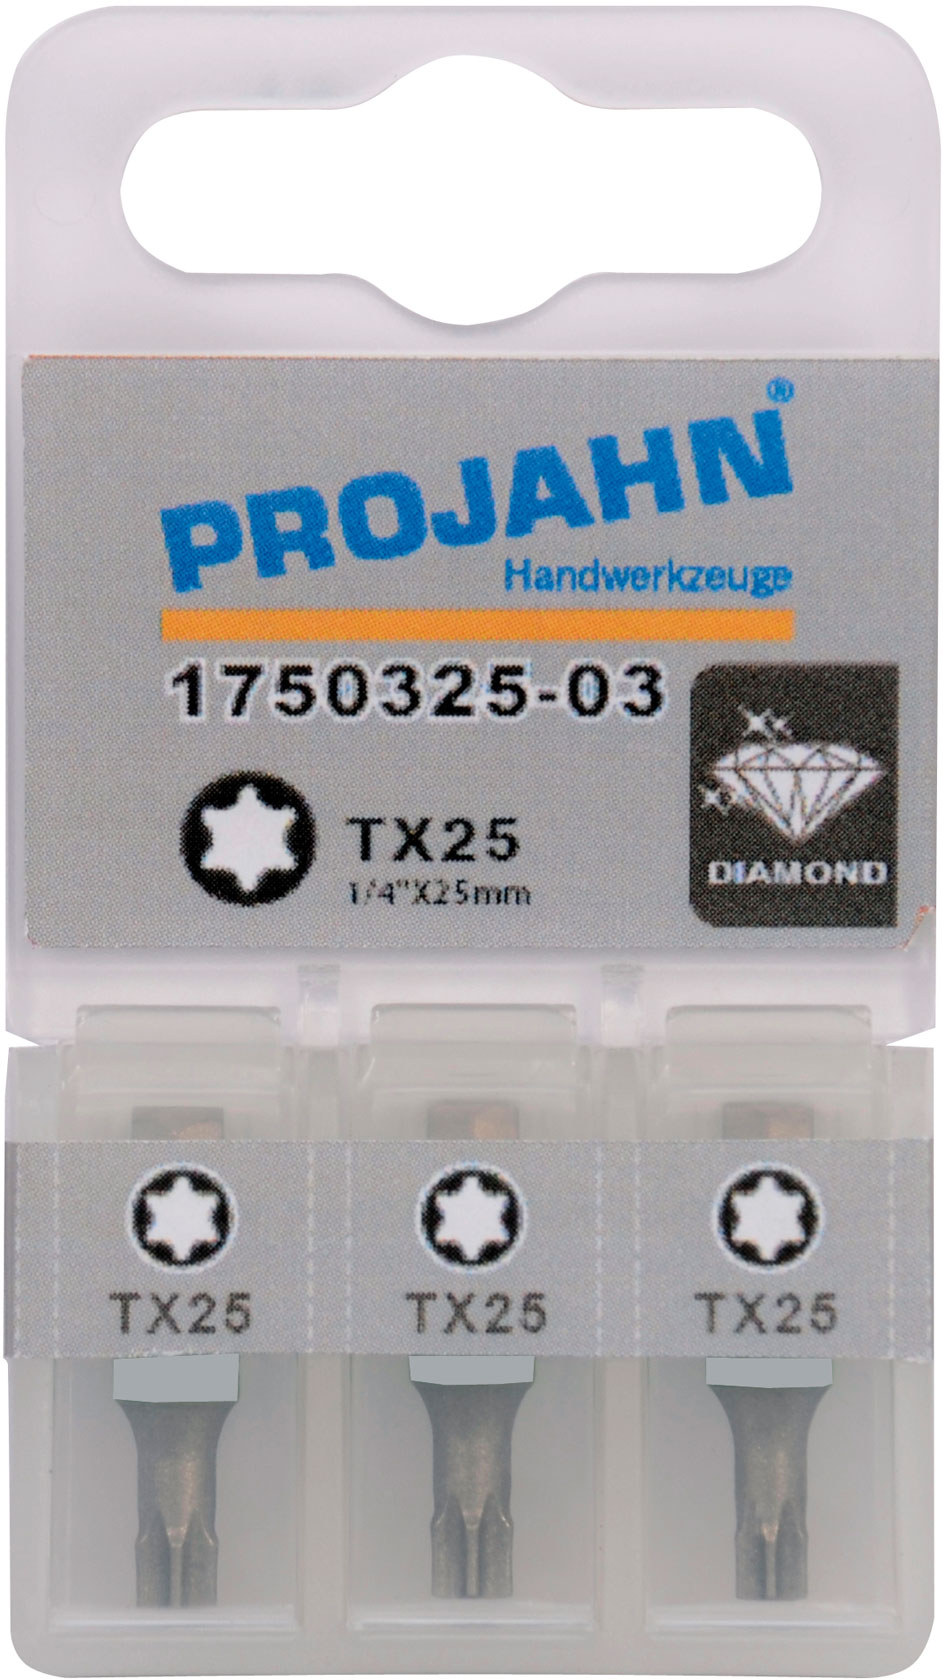 10 Stück 1/4 Bit Projahn Torx-BIT 40-25 mm lang TX 40